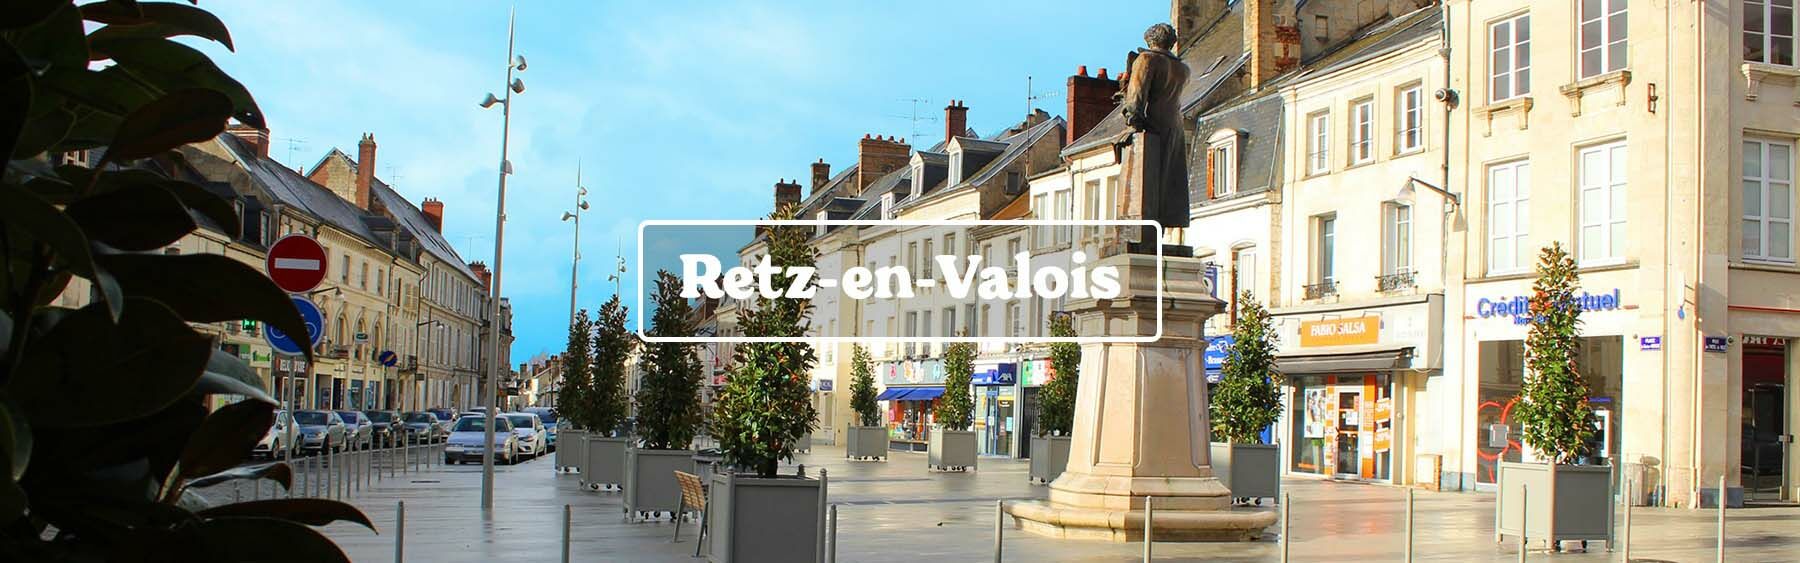 Découvrez les commerçants de Retz-en-Valois dans l'Aisne